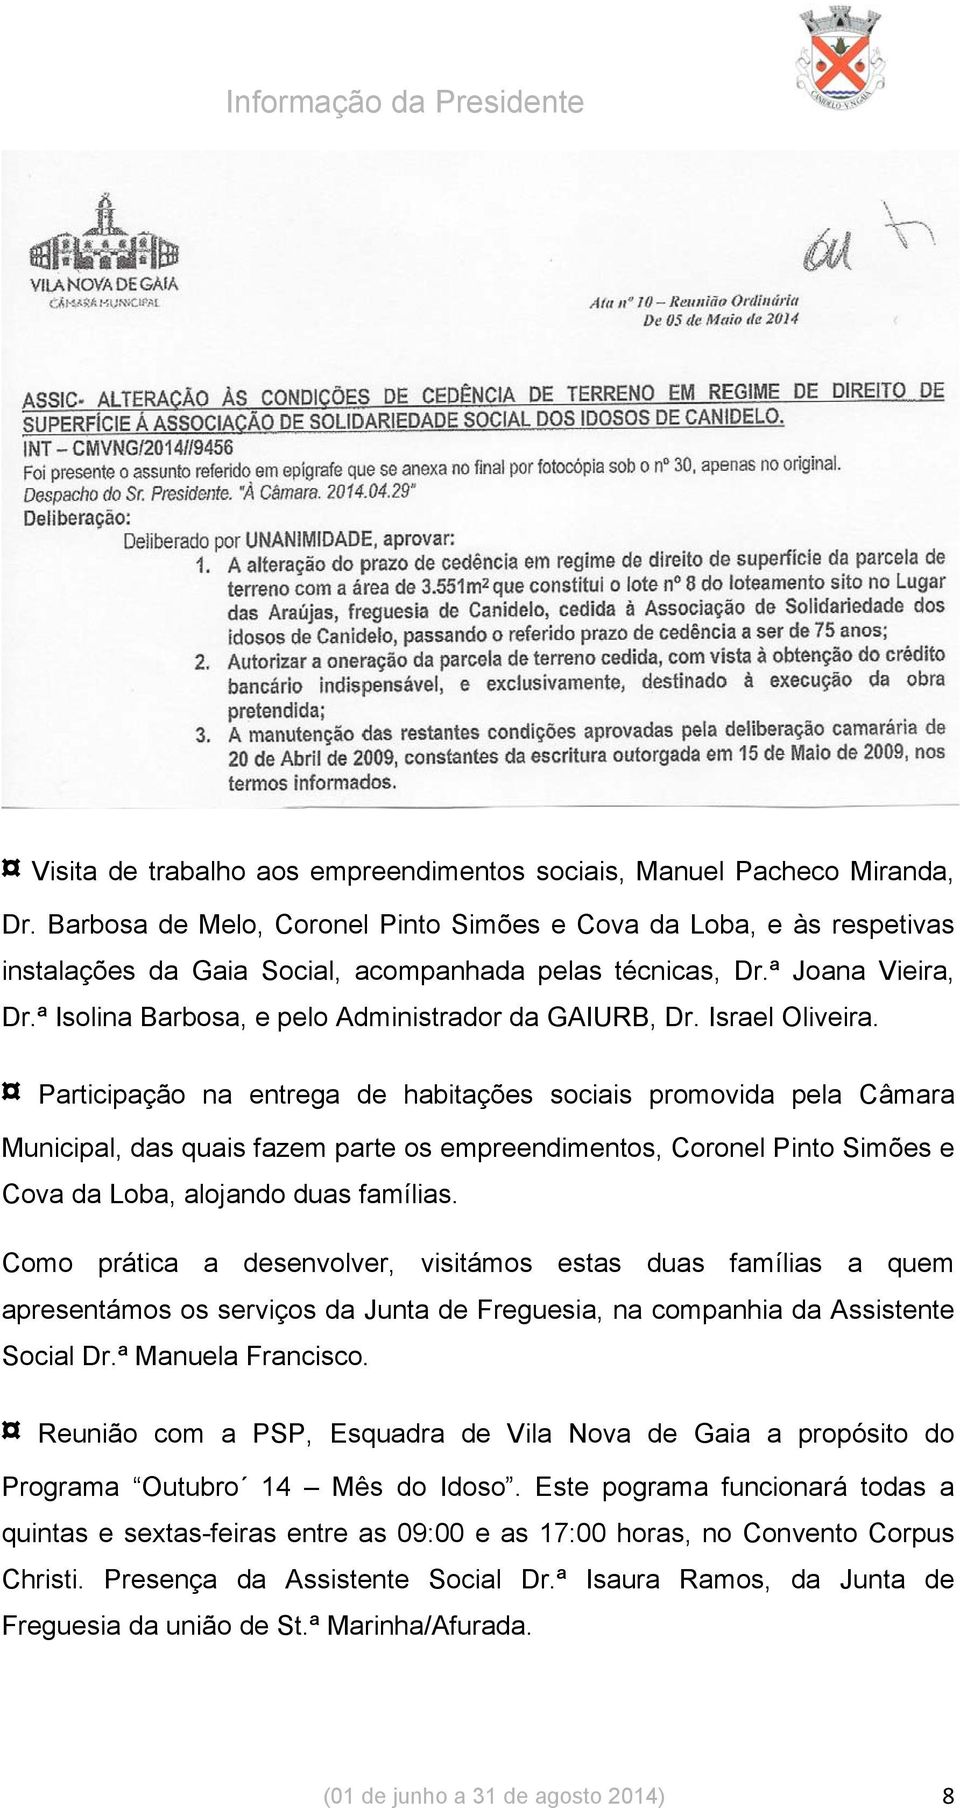 ª Isolina Barbosa, e pelo Administrador da GAIURB, Dr. Israel Oliveira.